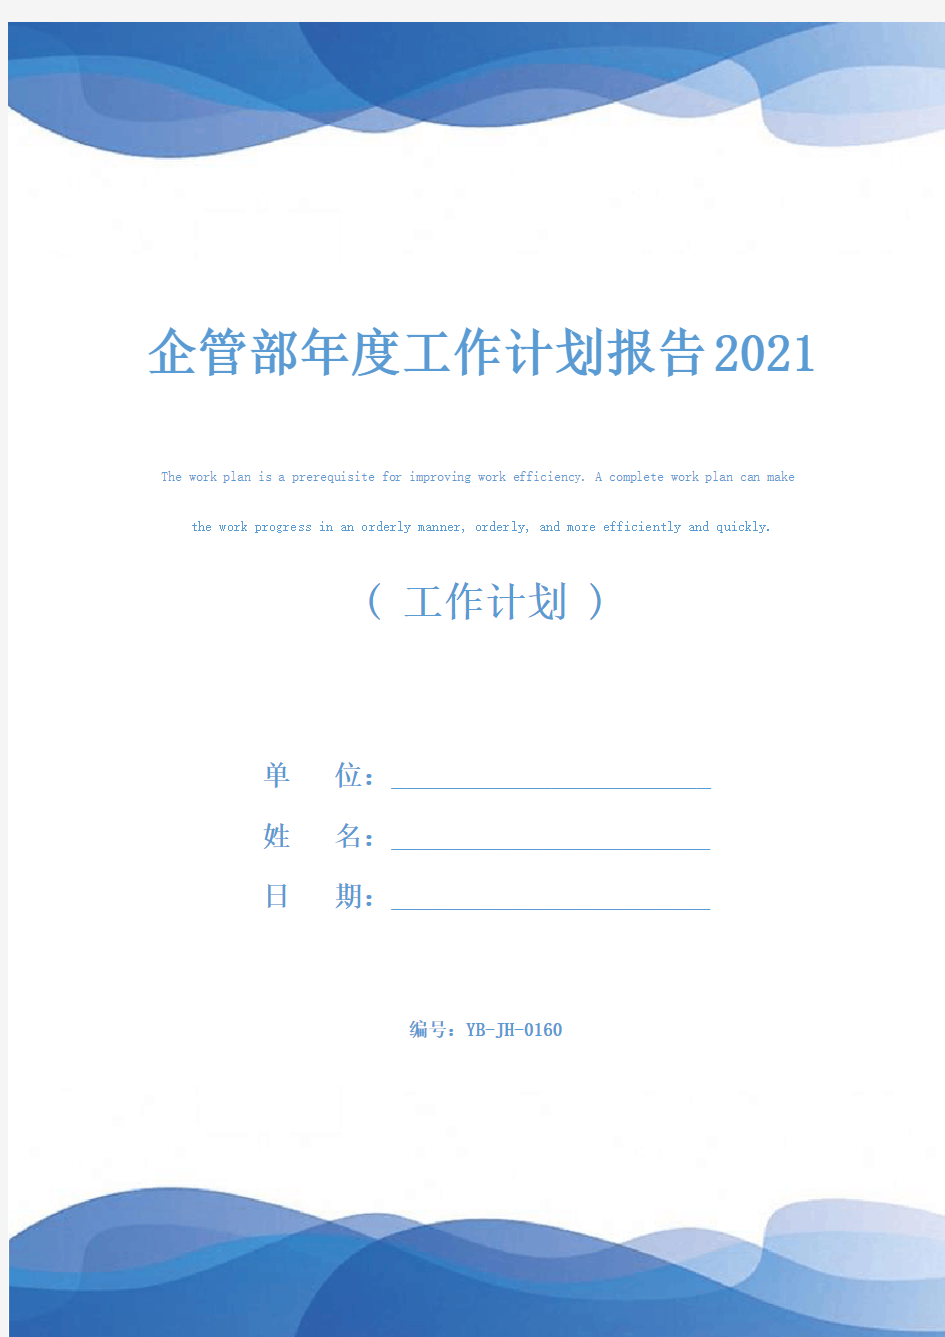 企管部年度工作计划报告2021